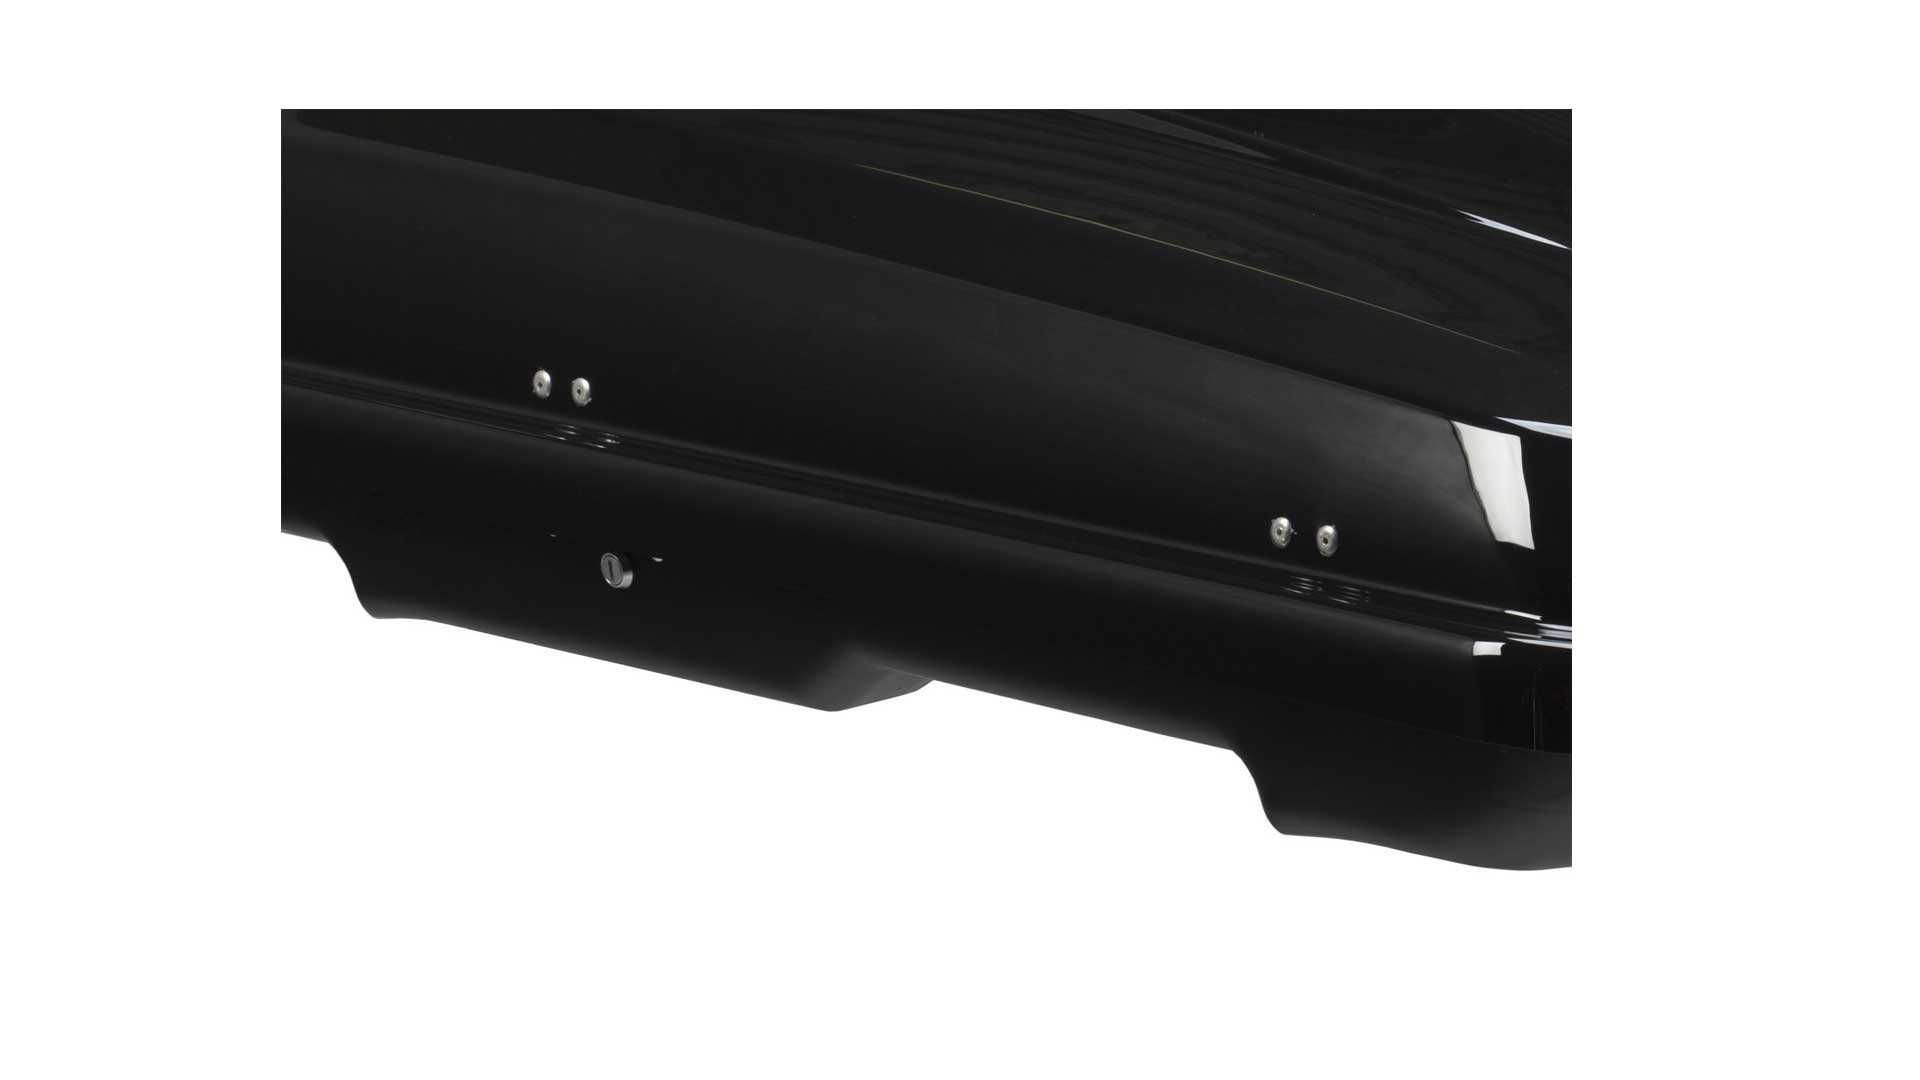 Pojemny box dachowy Taurus Xtreme II 450 czarny połysk